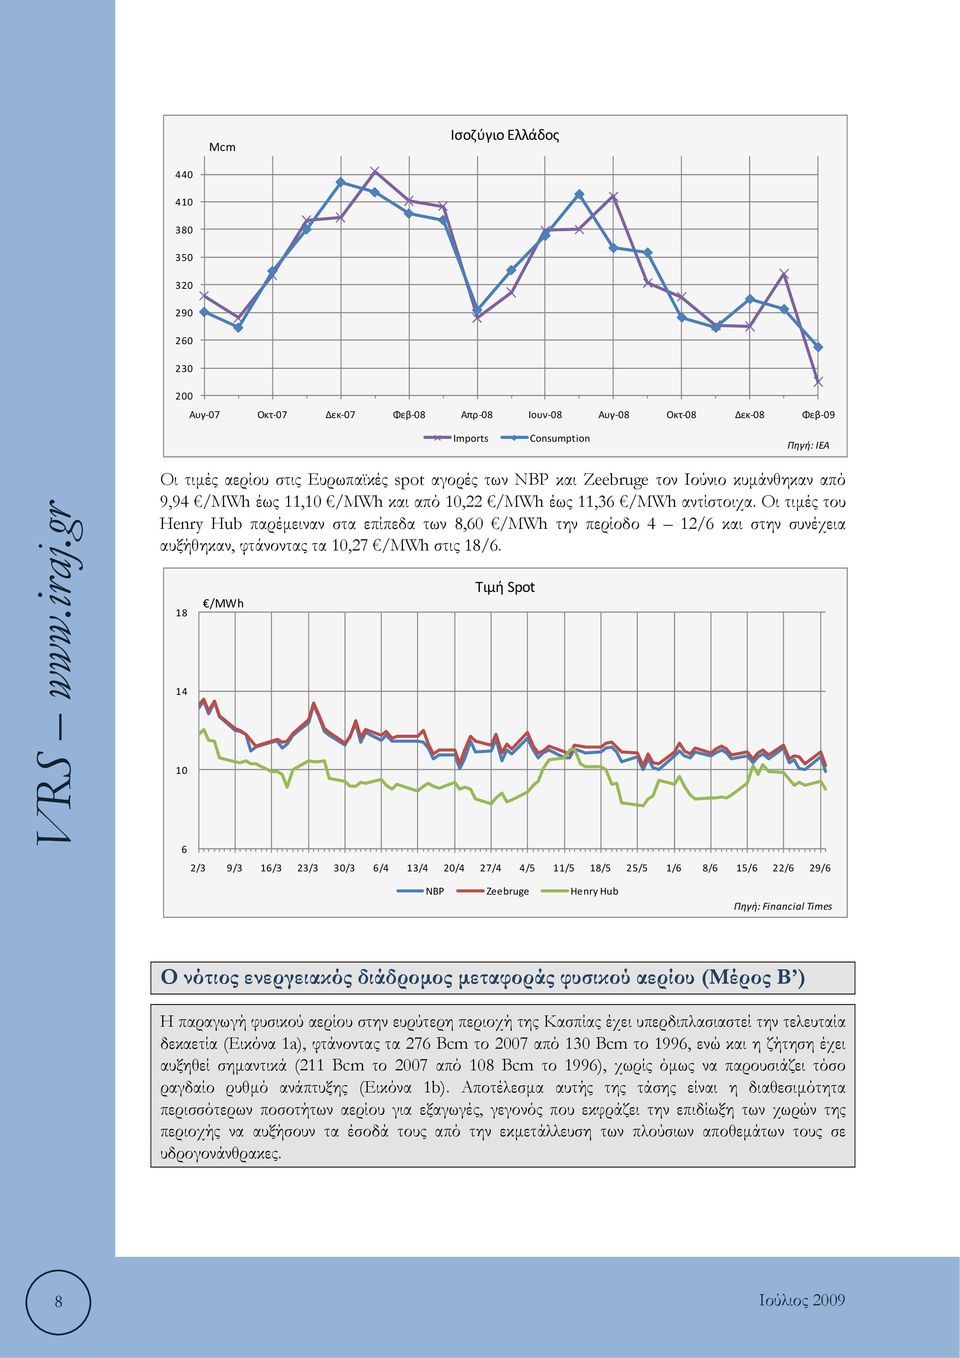 Οι τιμές του Henry Hub παρέμειναν στα επίπεδα των 8,60 /MWh την περίοδο 4 12/6 και στην συνέχεια αυξήθηκαν, φτάνοντας τα 10,27 /MWh στις 18/6.